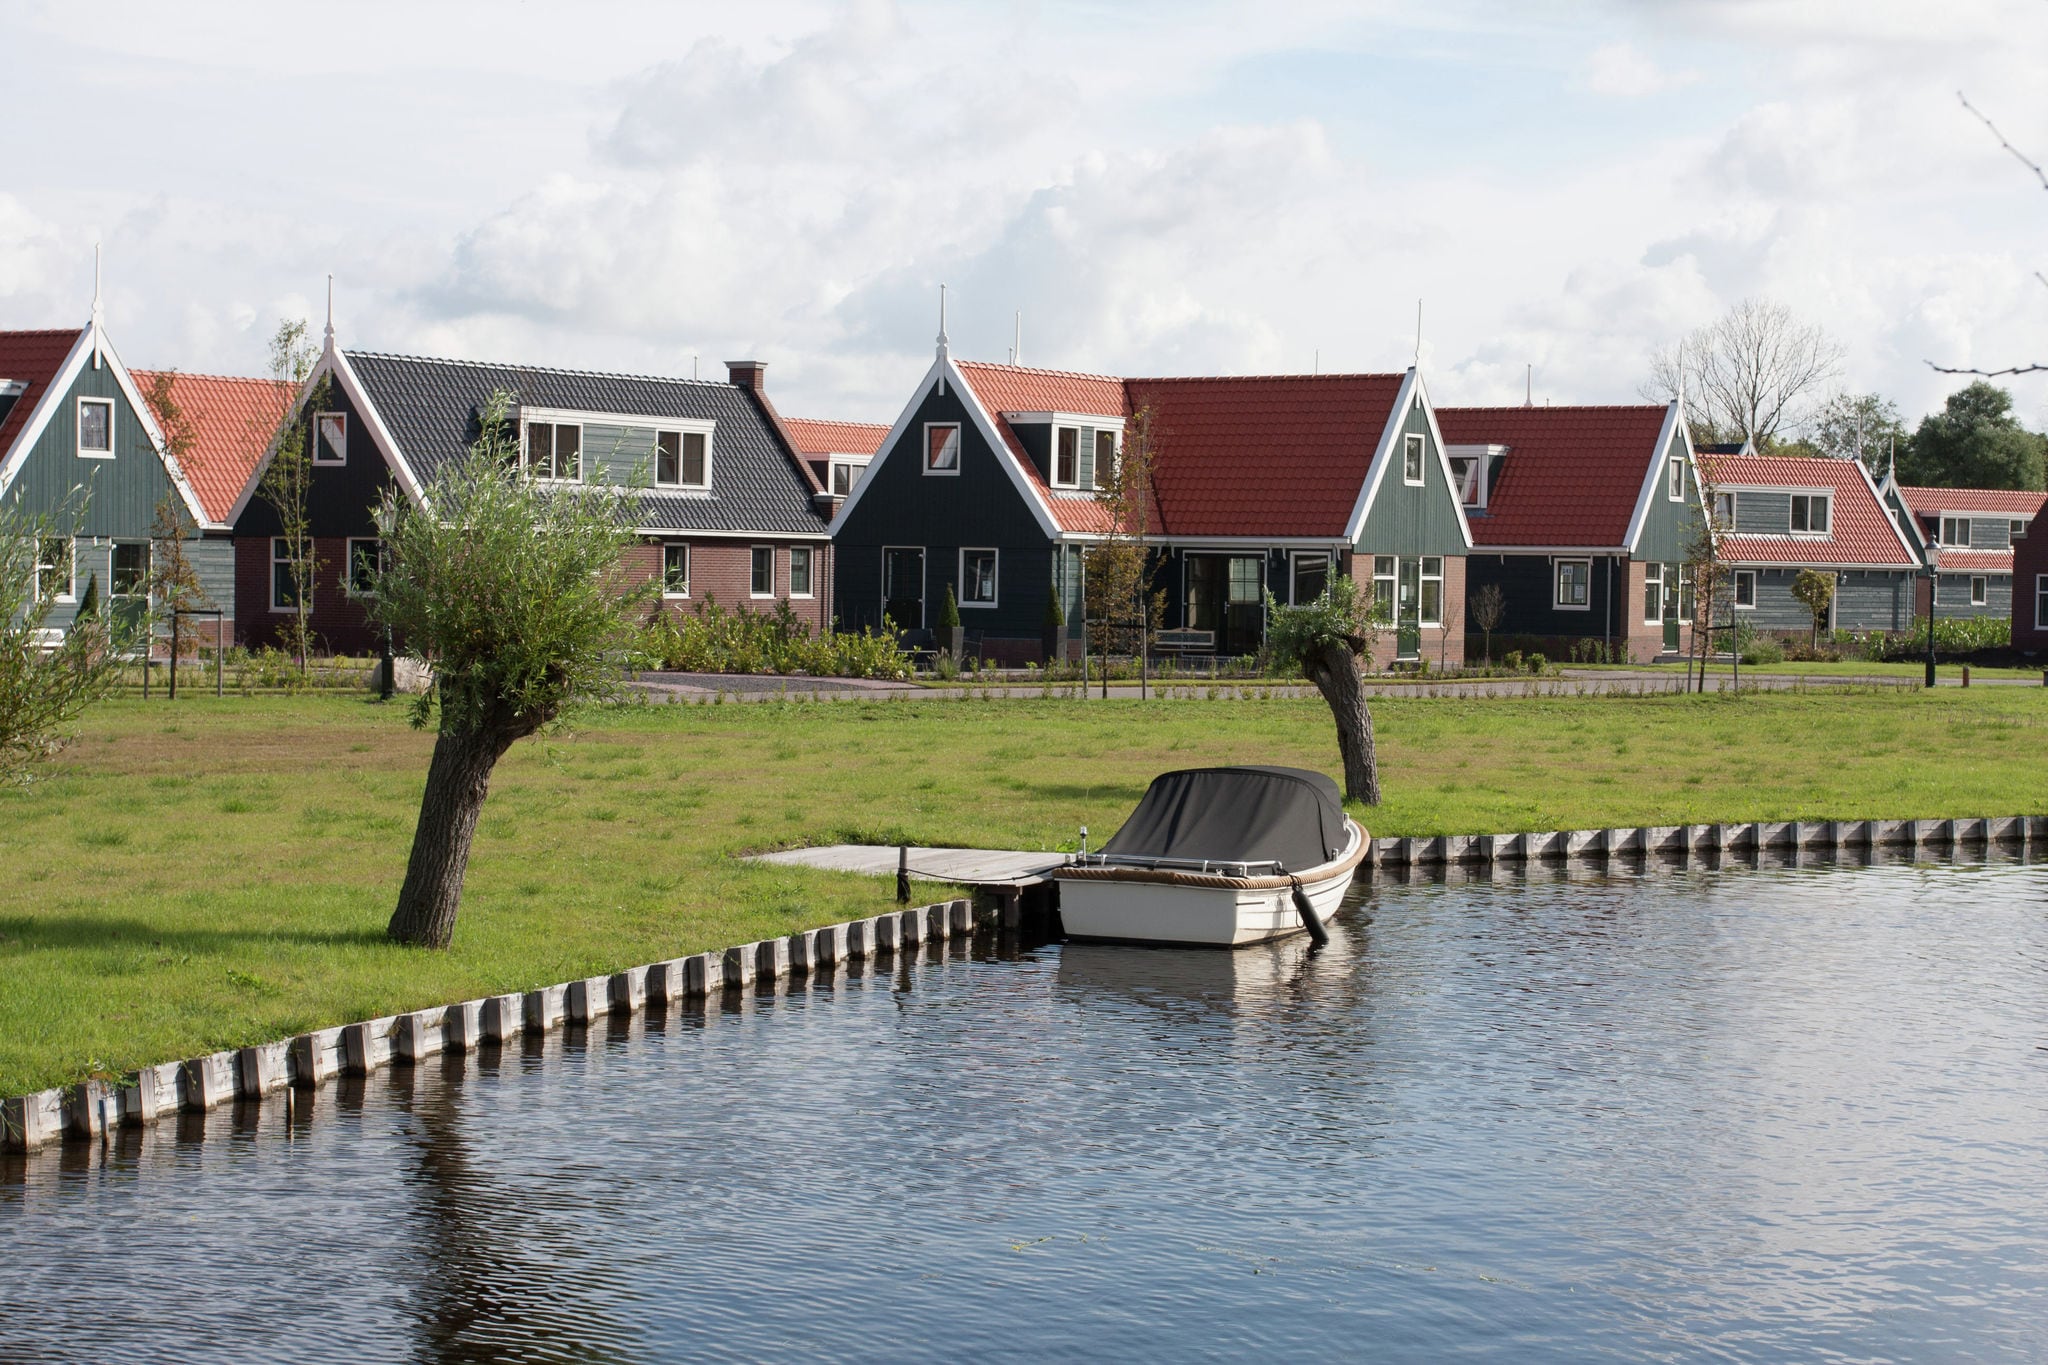 Ferienhaus im 15 km. von Alkmaar entfernt